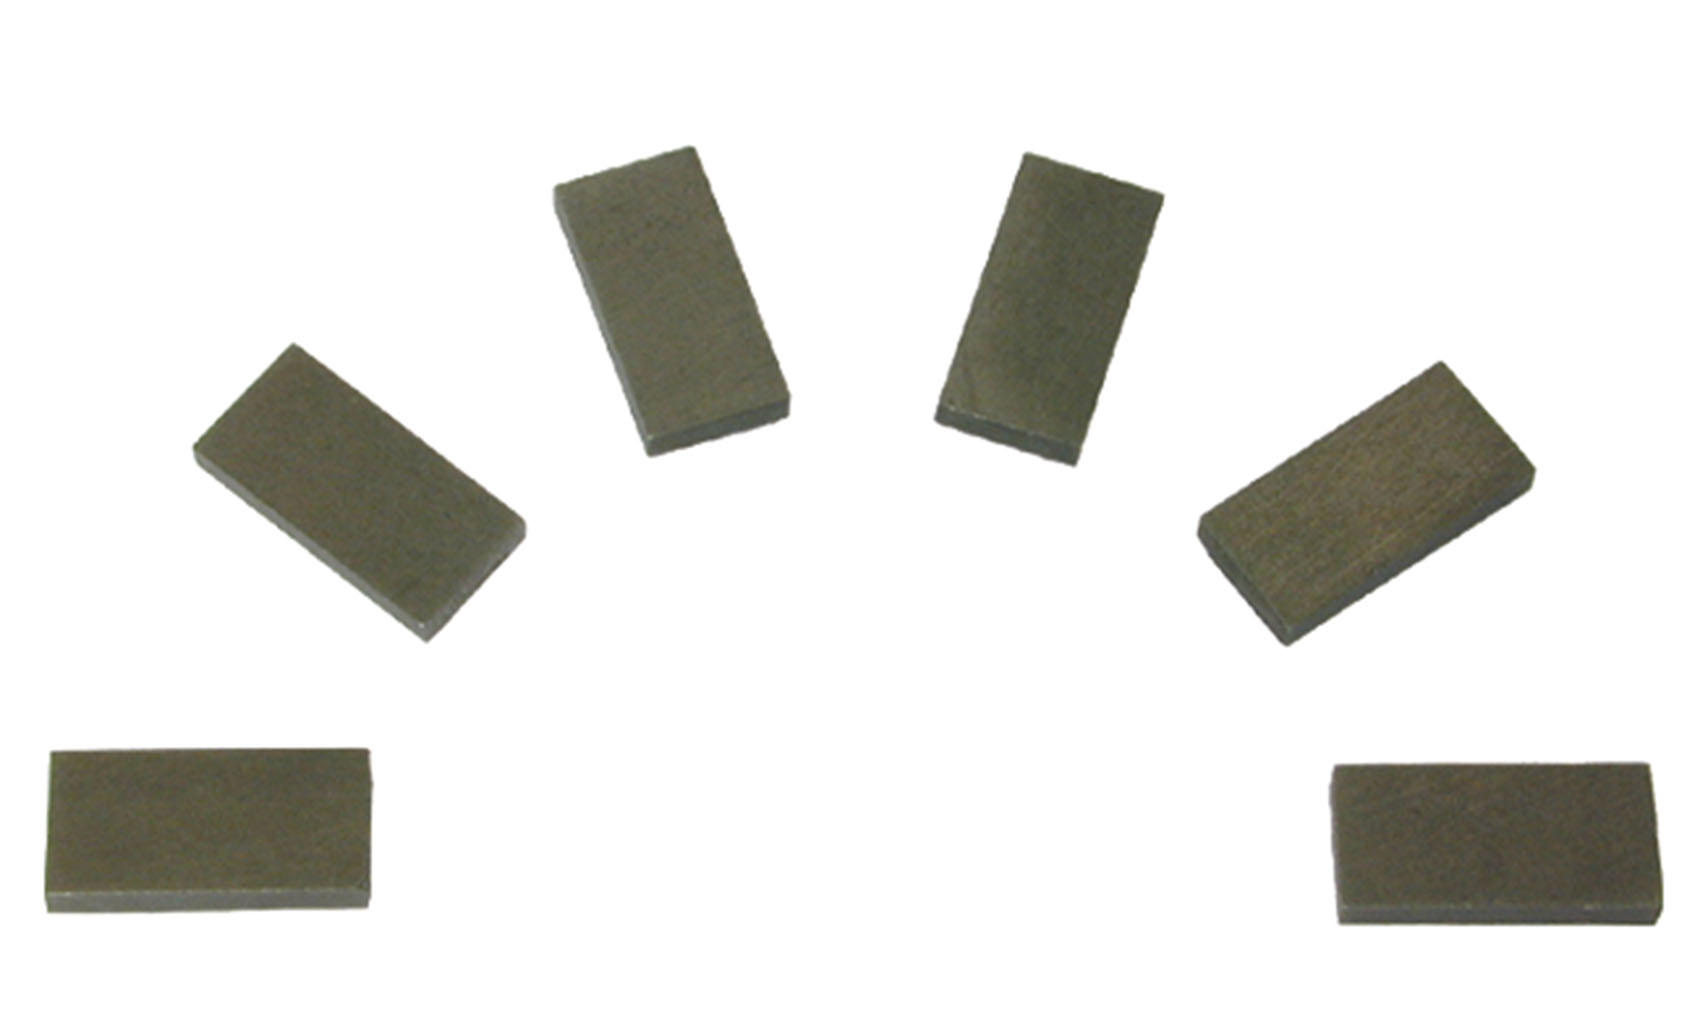 Viessmann 6841 - Magnete 10x1,5, 6 St. incl. Klebepads